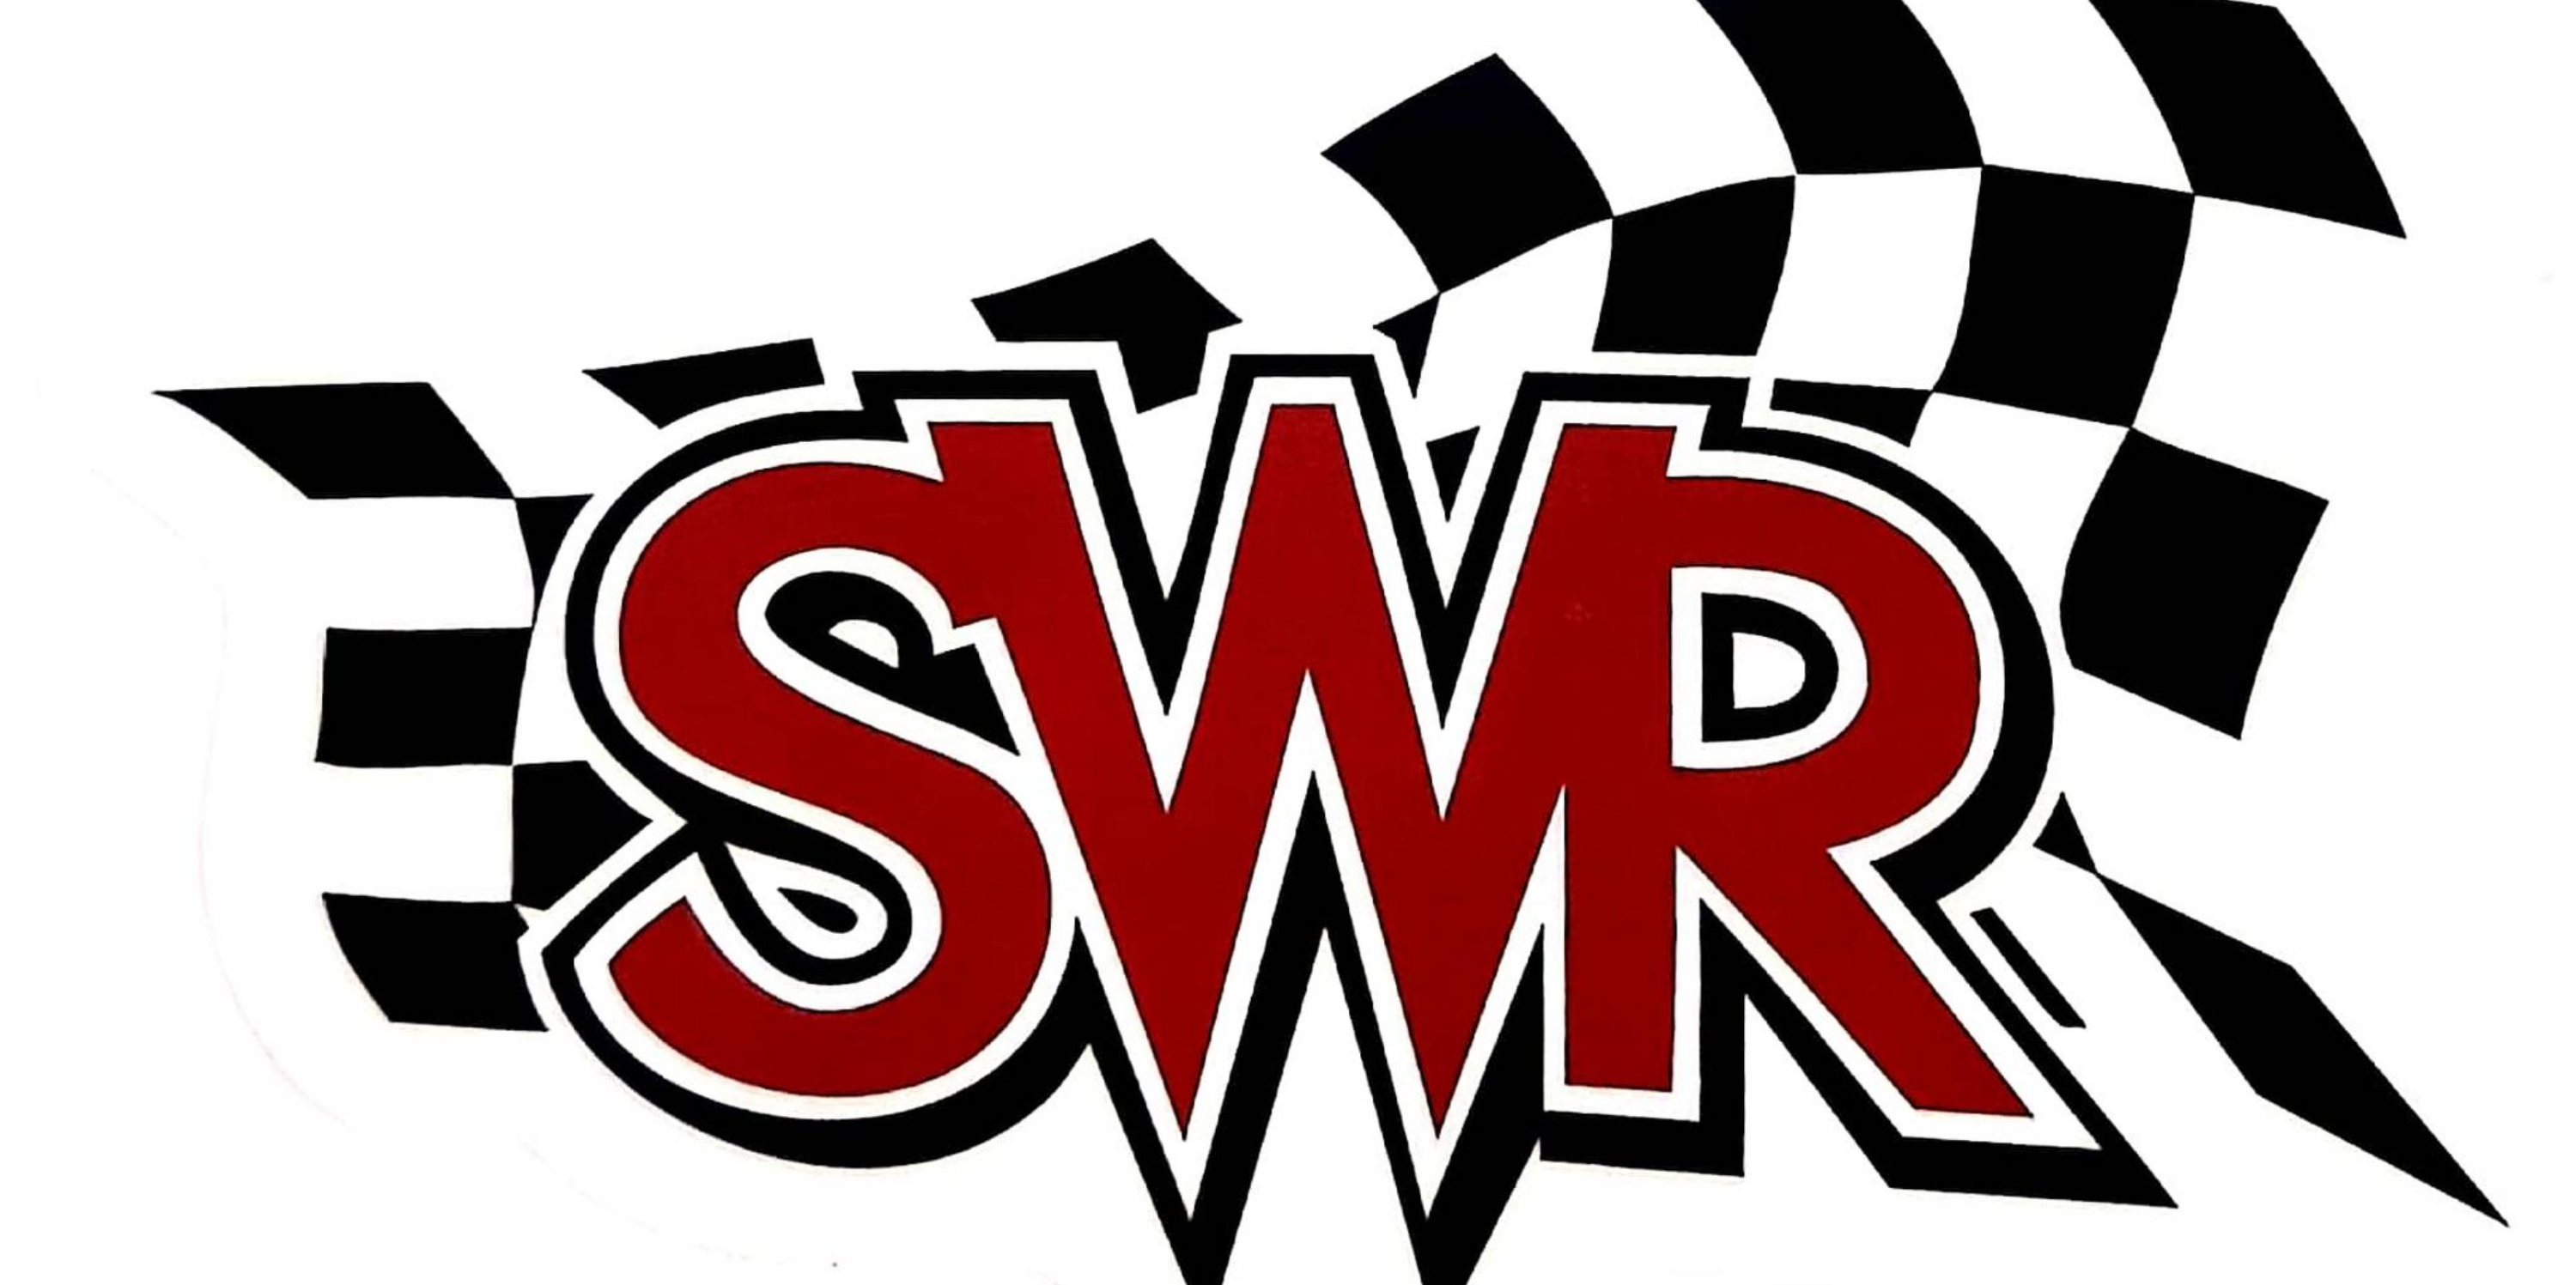 swr logo